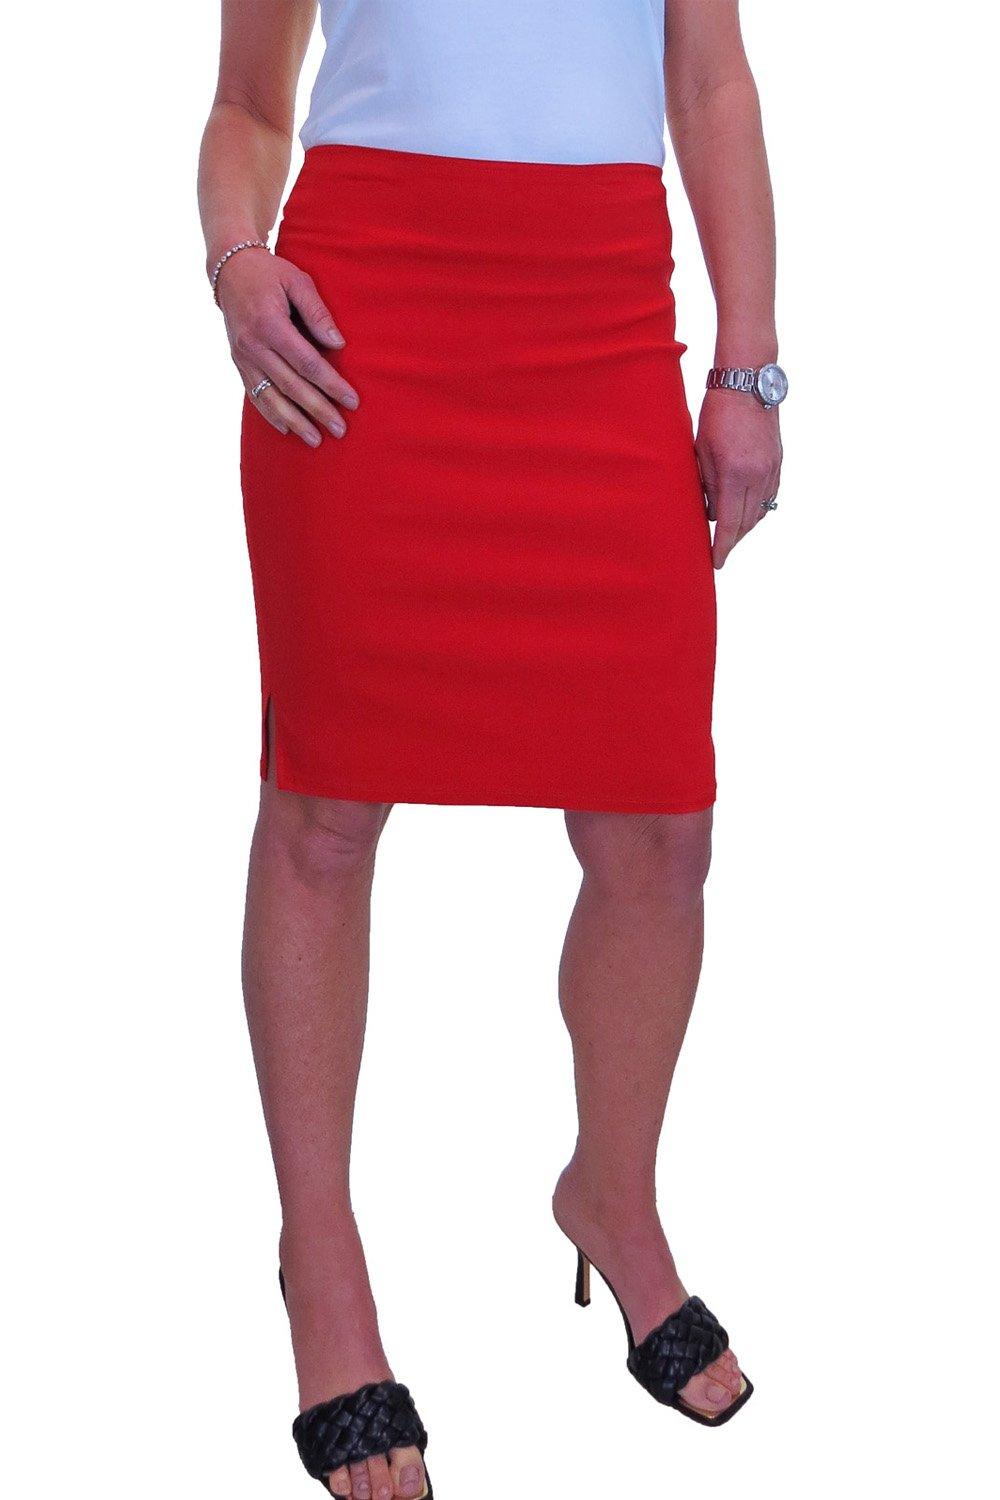 Юбка-карандаш длиной выше колена Paulo Due, красный кожаная юбка облегающая бедра женская длинная юбка новинка весны 2022 модная облегающая юбка средней длины юбка с разрезом